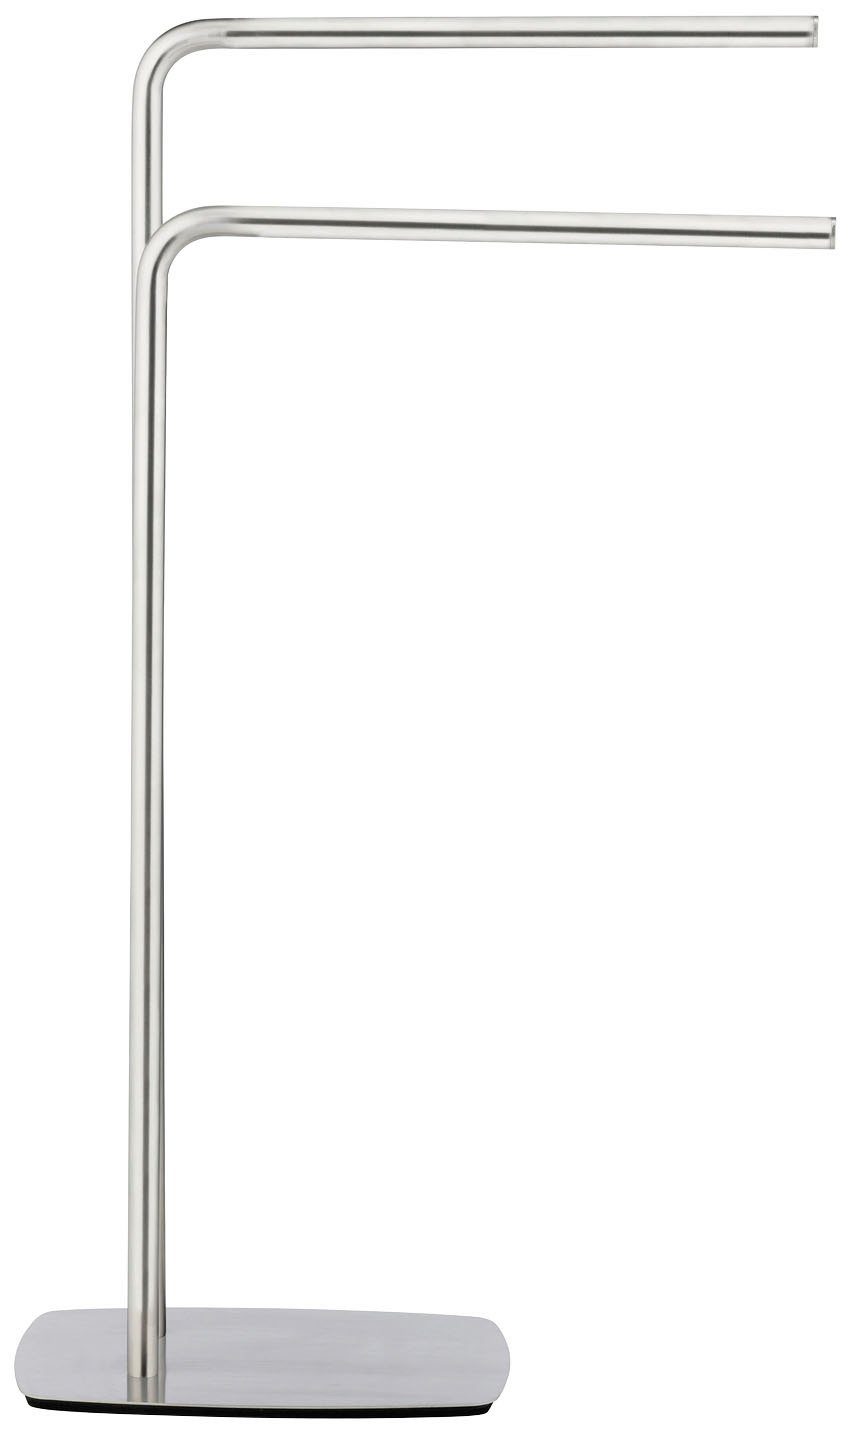 WENKO Handtuchständer Iria, mit 2 Handtuchstangen, Mit schwerer Bodenplatte  aus Edelstahl für einen sicheren Stand | Handtuchständer